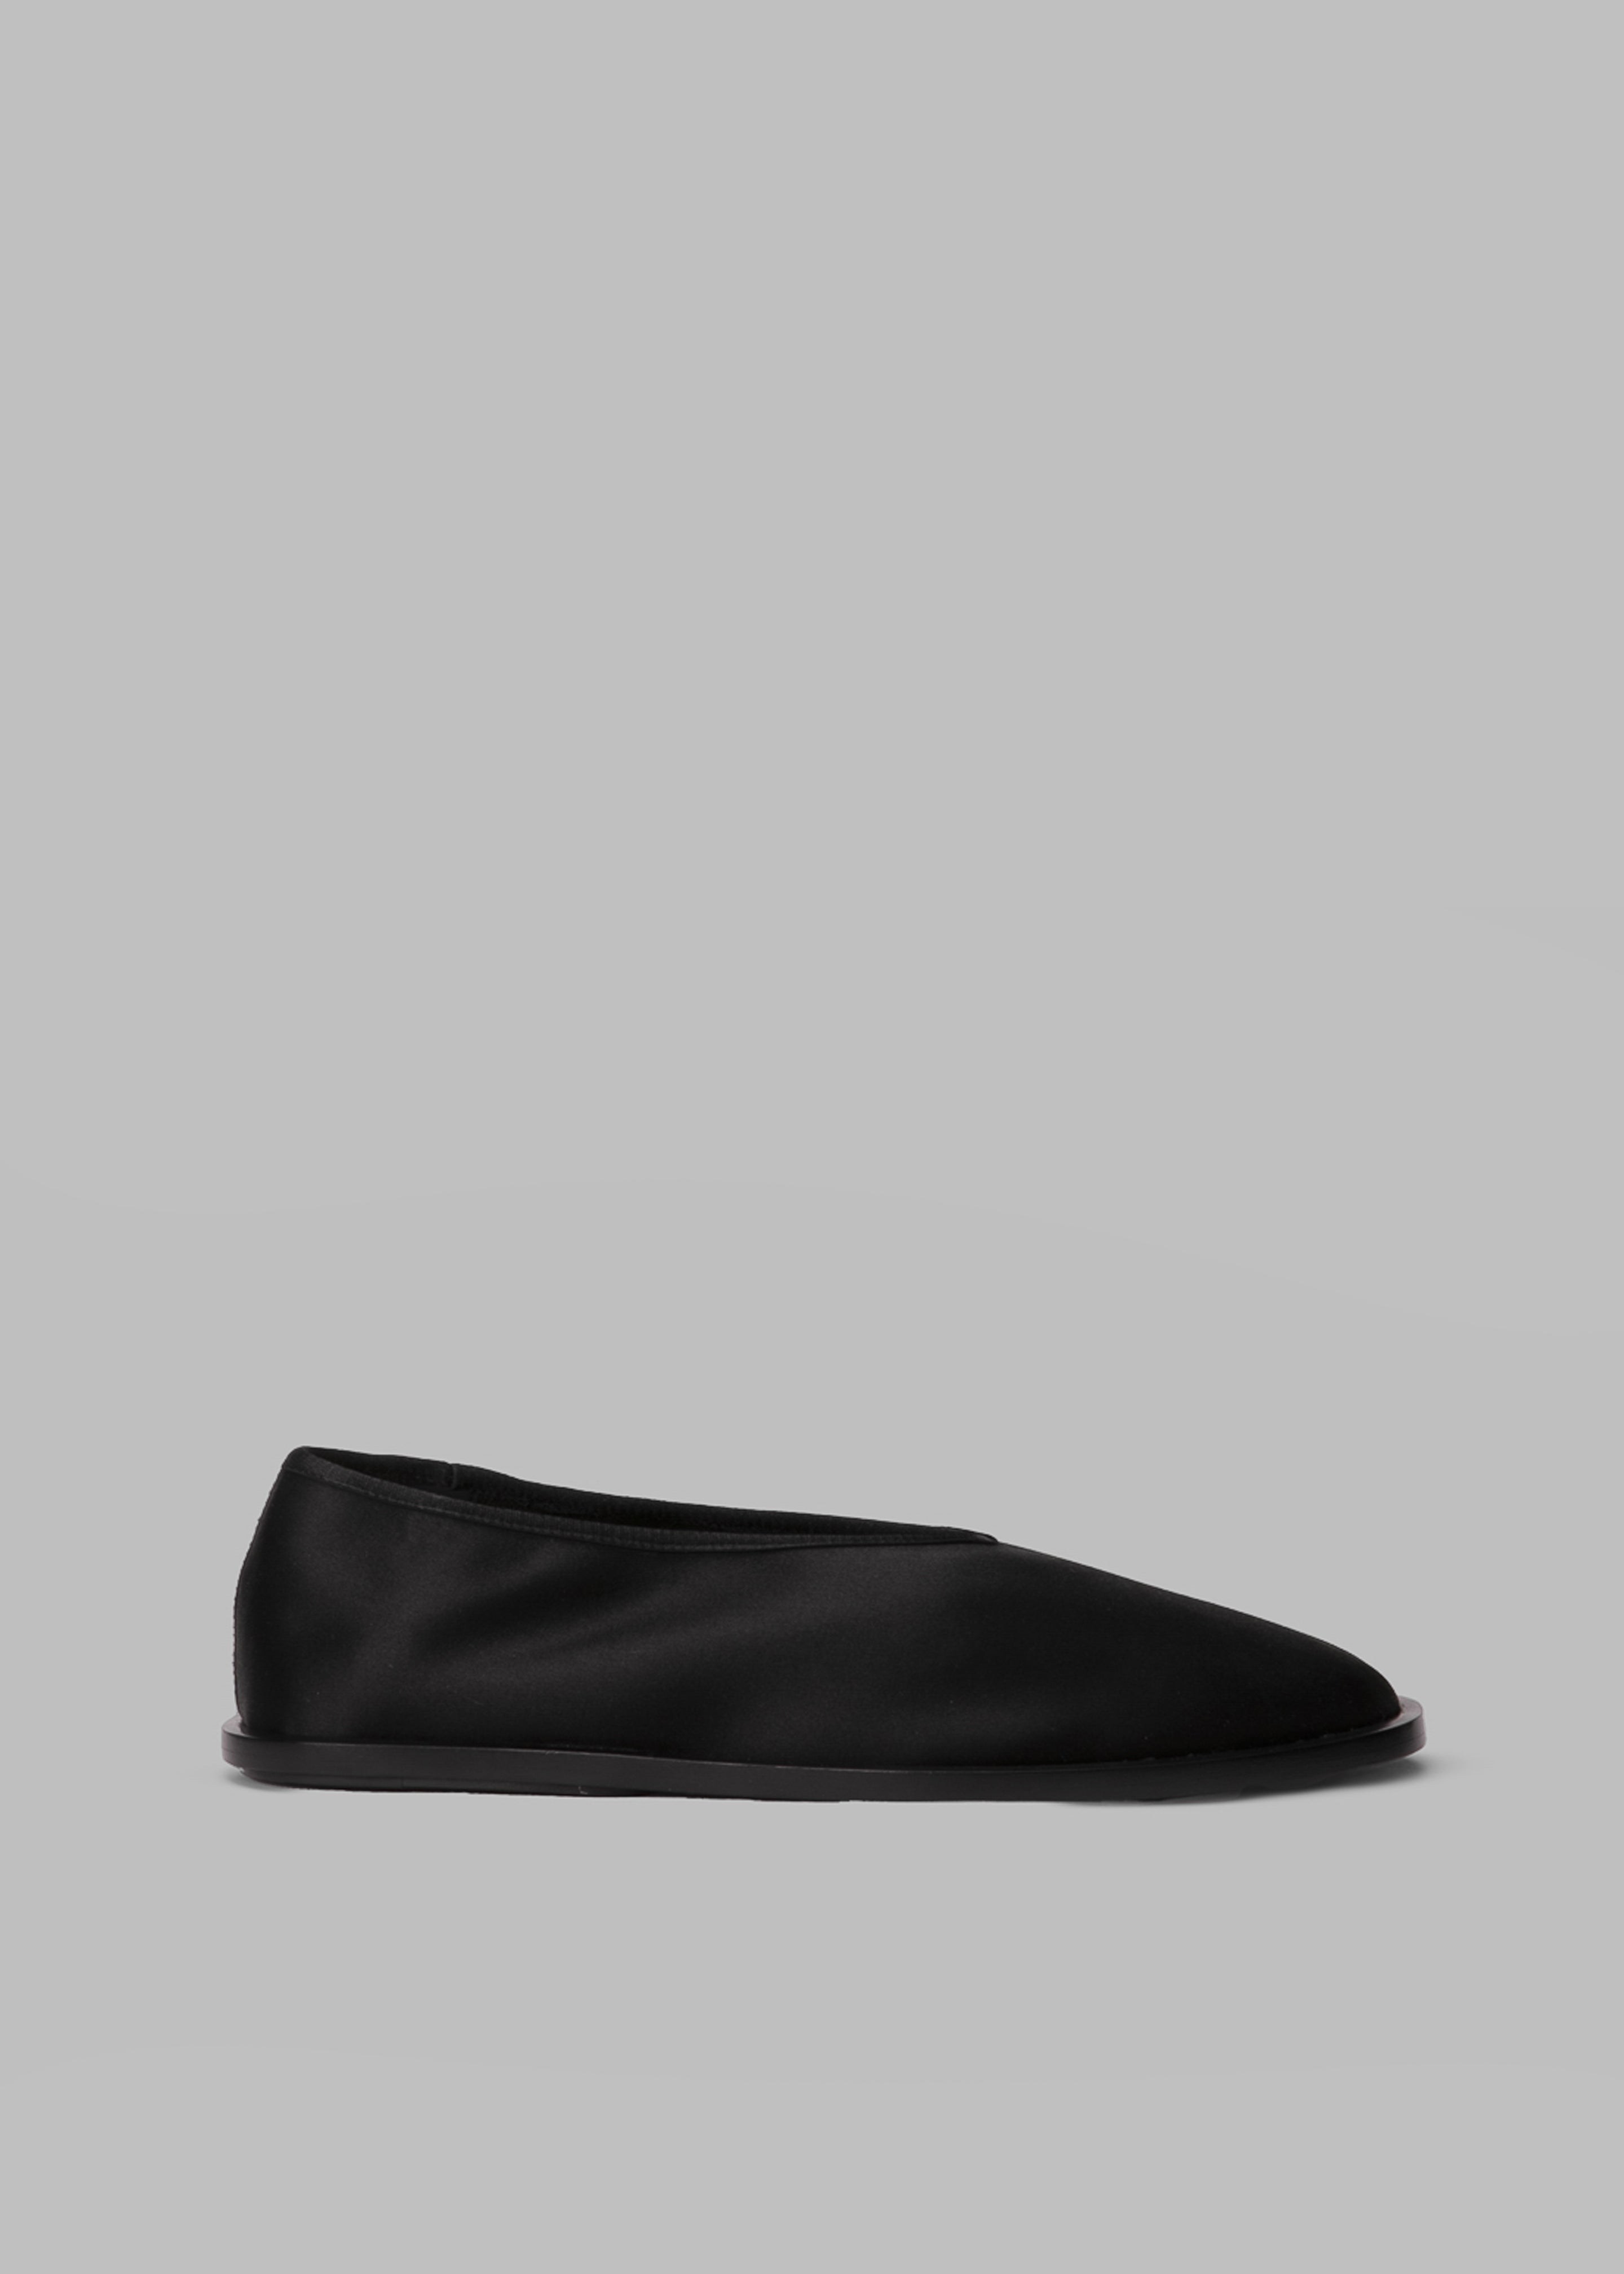 Proenza Schouler Soft Square Slippers - Black - 2